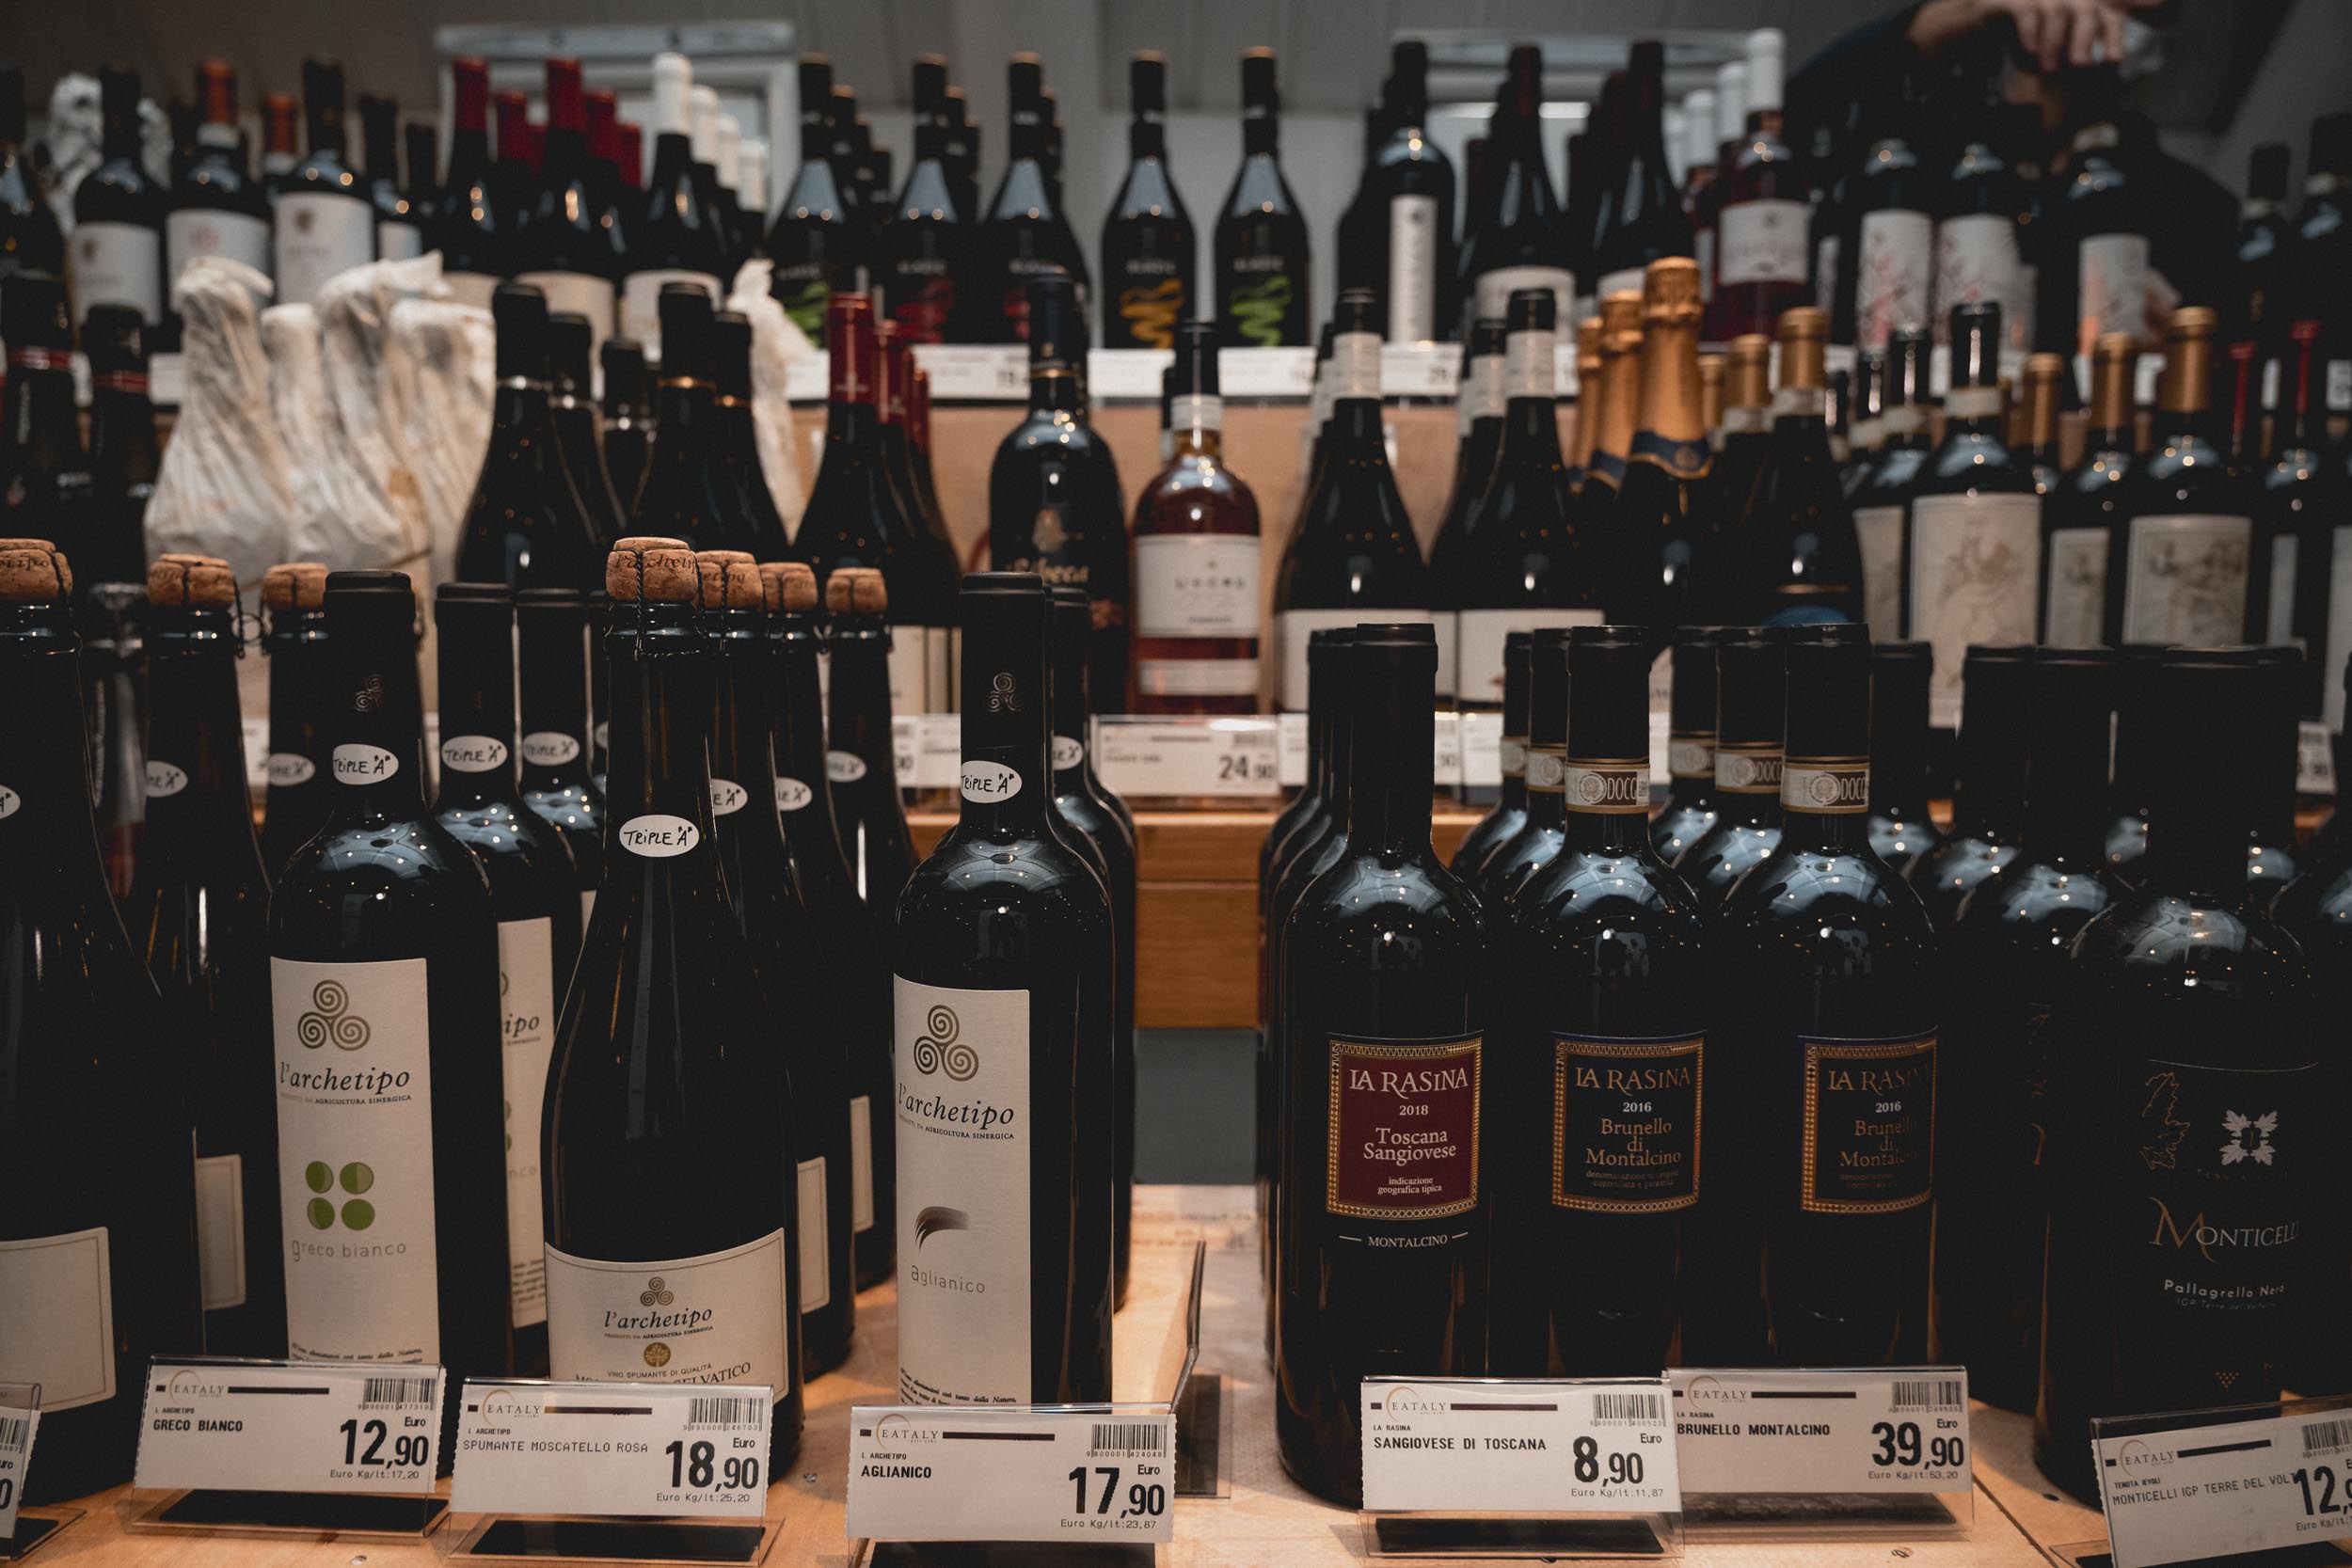 L’11 e il 12 novembre 2022 lo store romano organizza la manifestazione dedicata agli artigiani del vino italiano con 200 etichette in degustazione. In programma anche incontri con vignaioli, assaggi food e buona musica